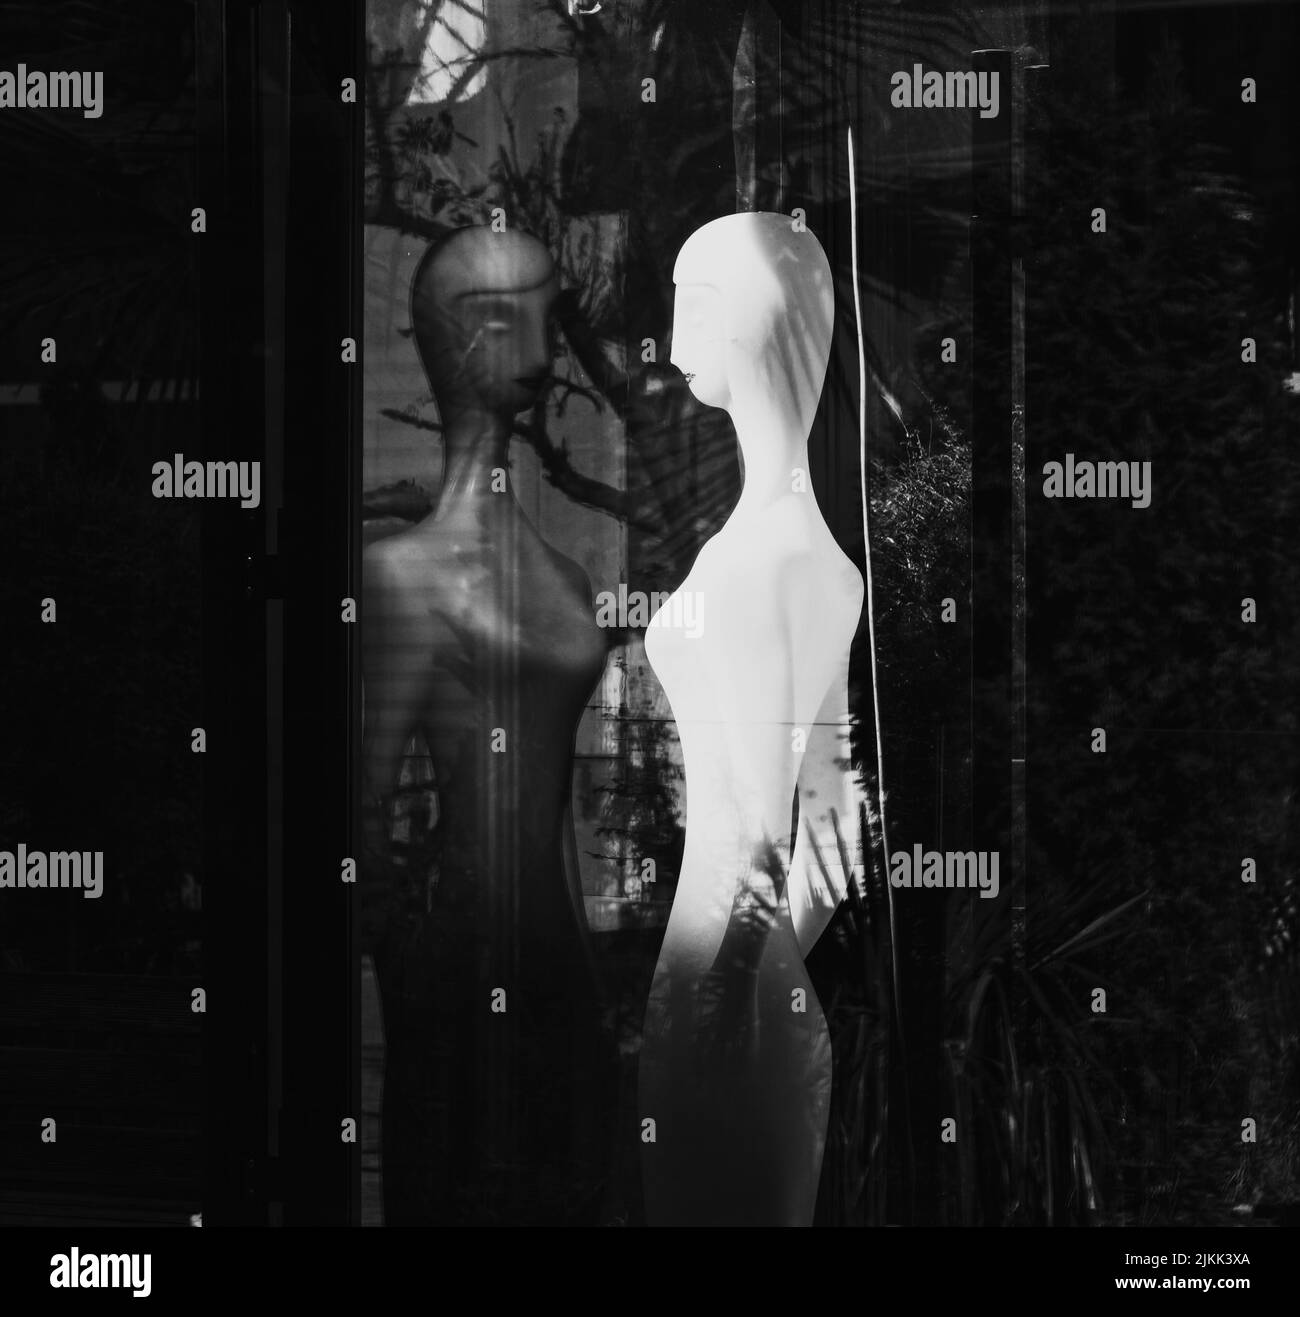 Une photo en échelle de gris du mannequin blanc devant le miroir avec des arbres à l'arrière Banque D'Images